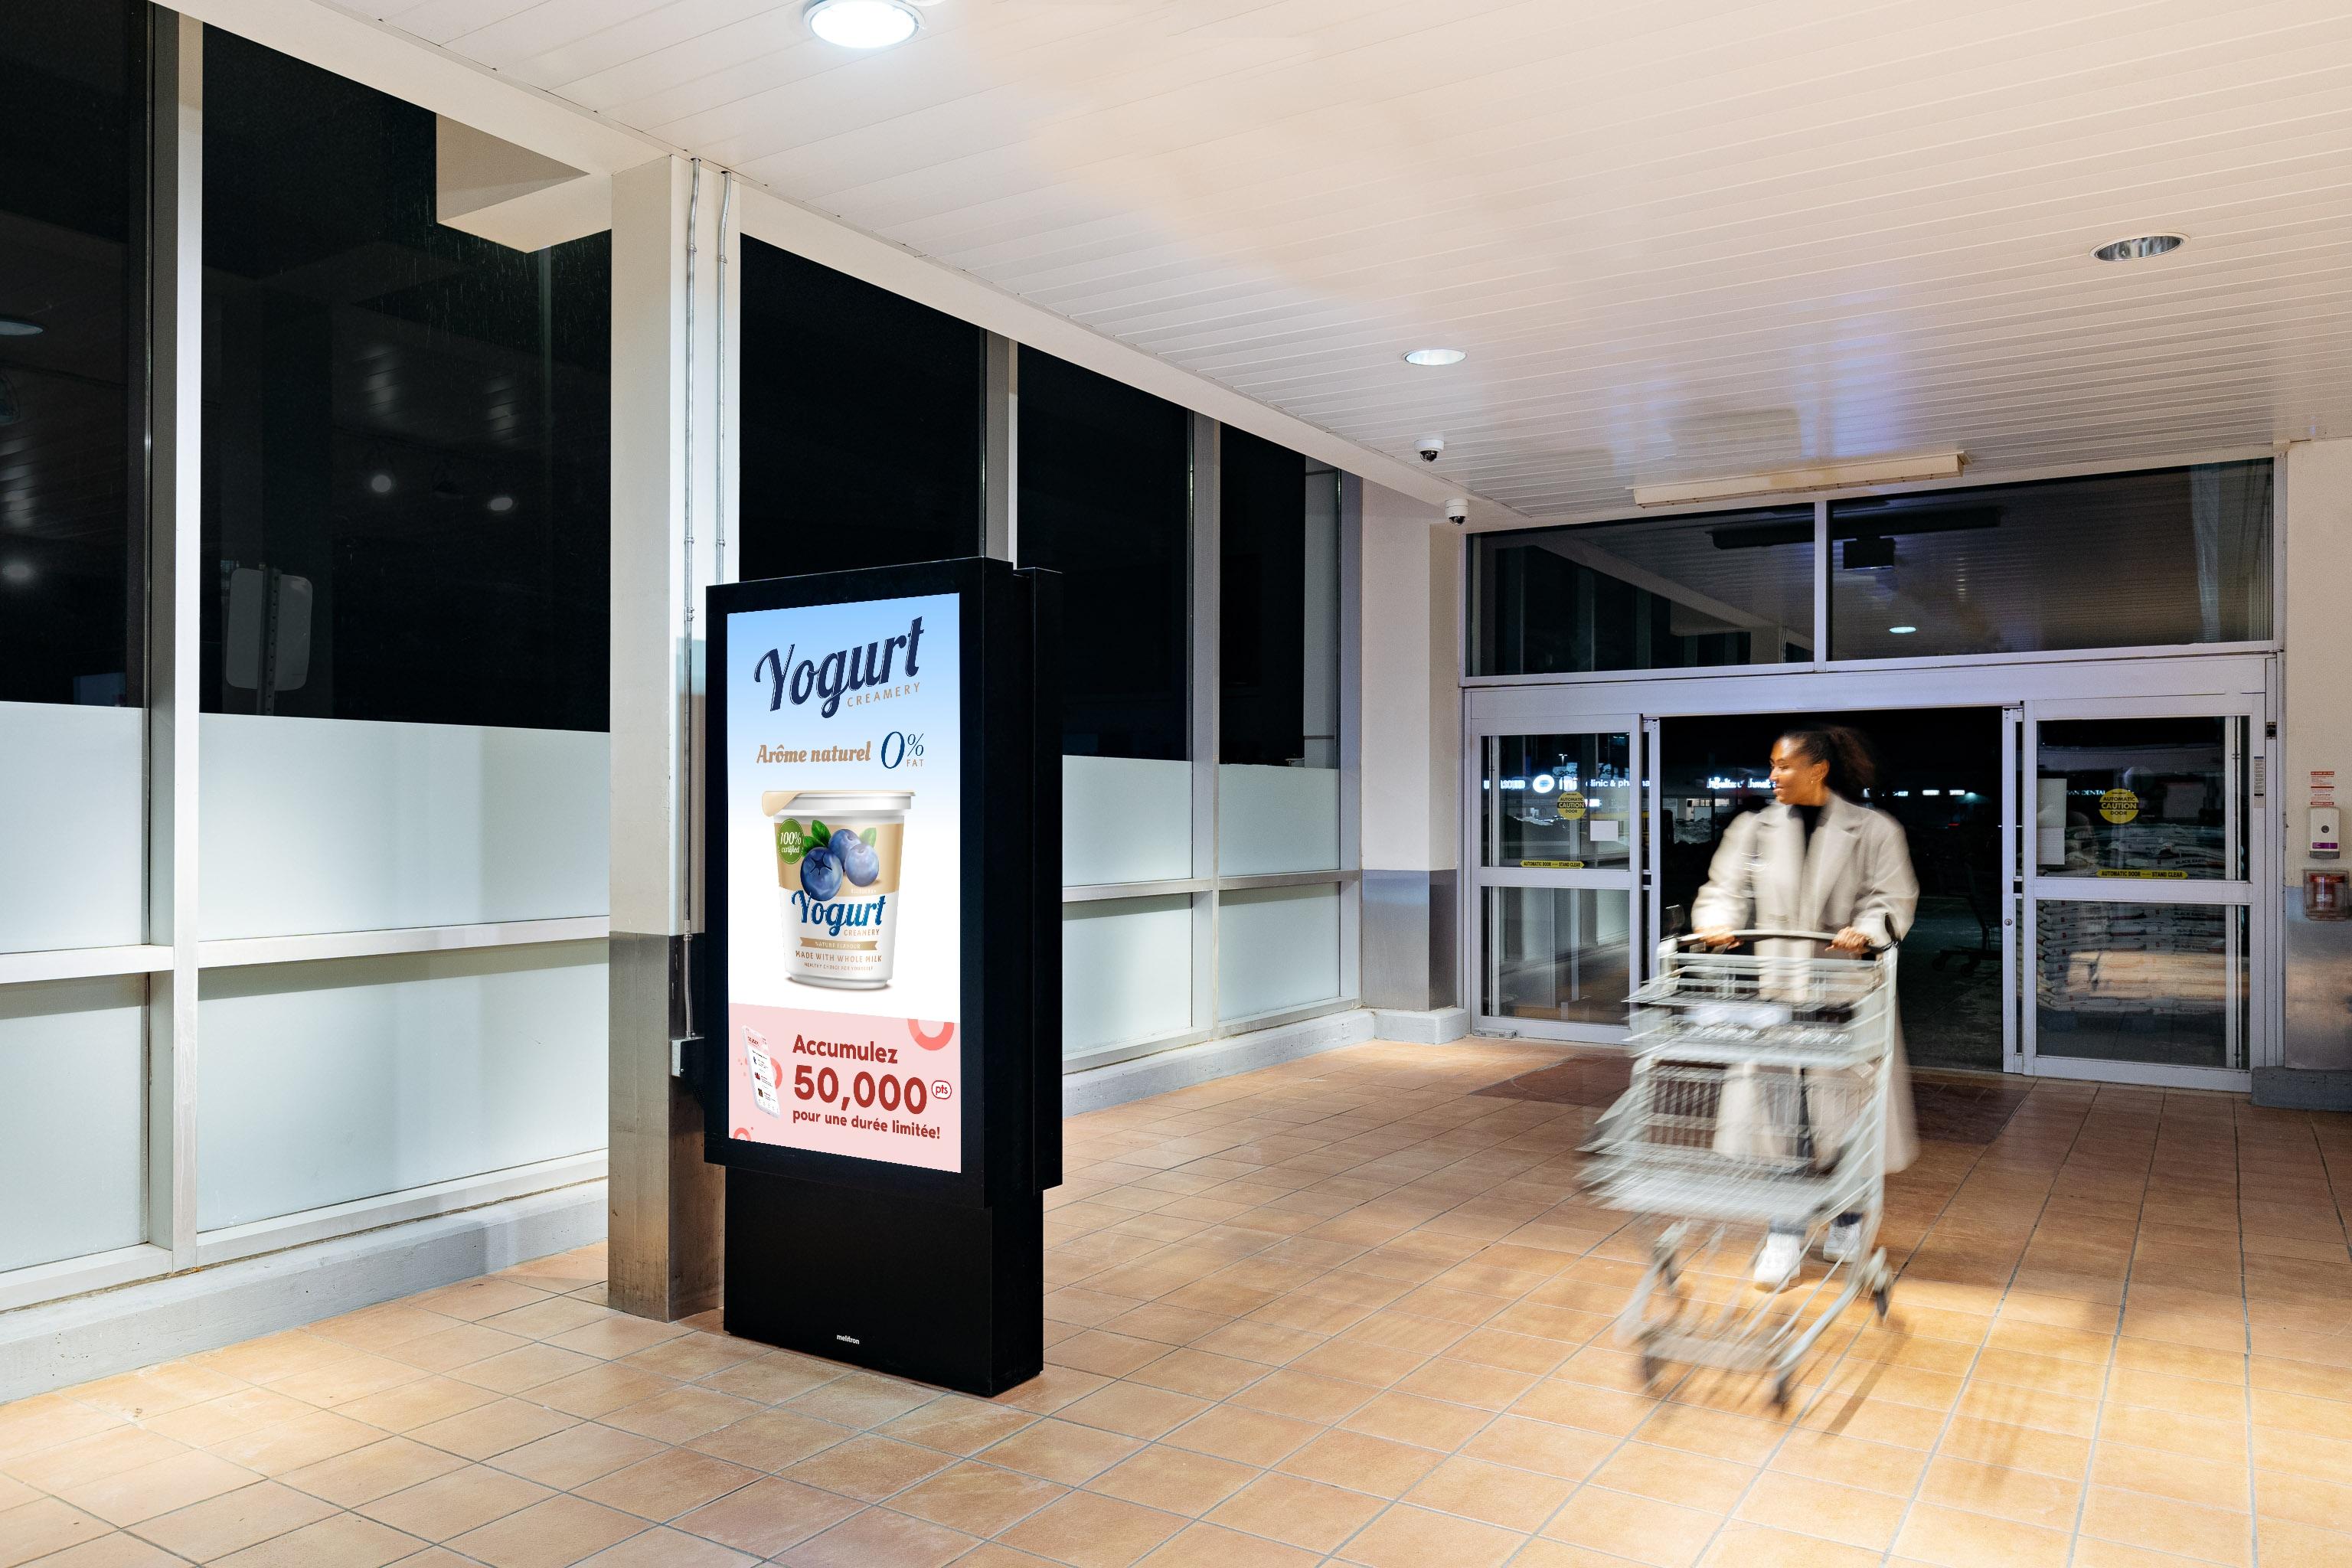 Une femme passe devant un écran à l'entrée principale d'une épicerie avec une publicité pour un yaourt dessus.